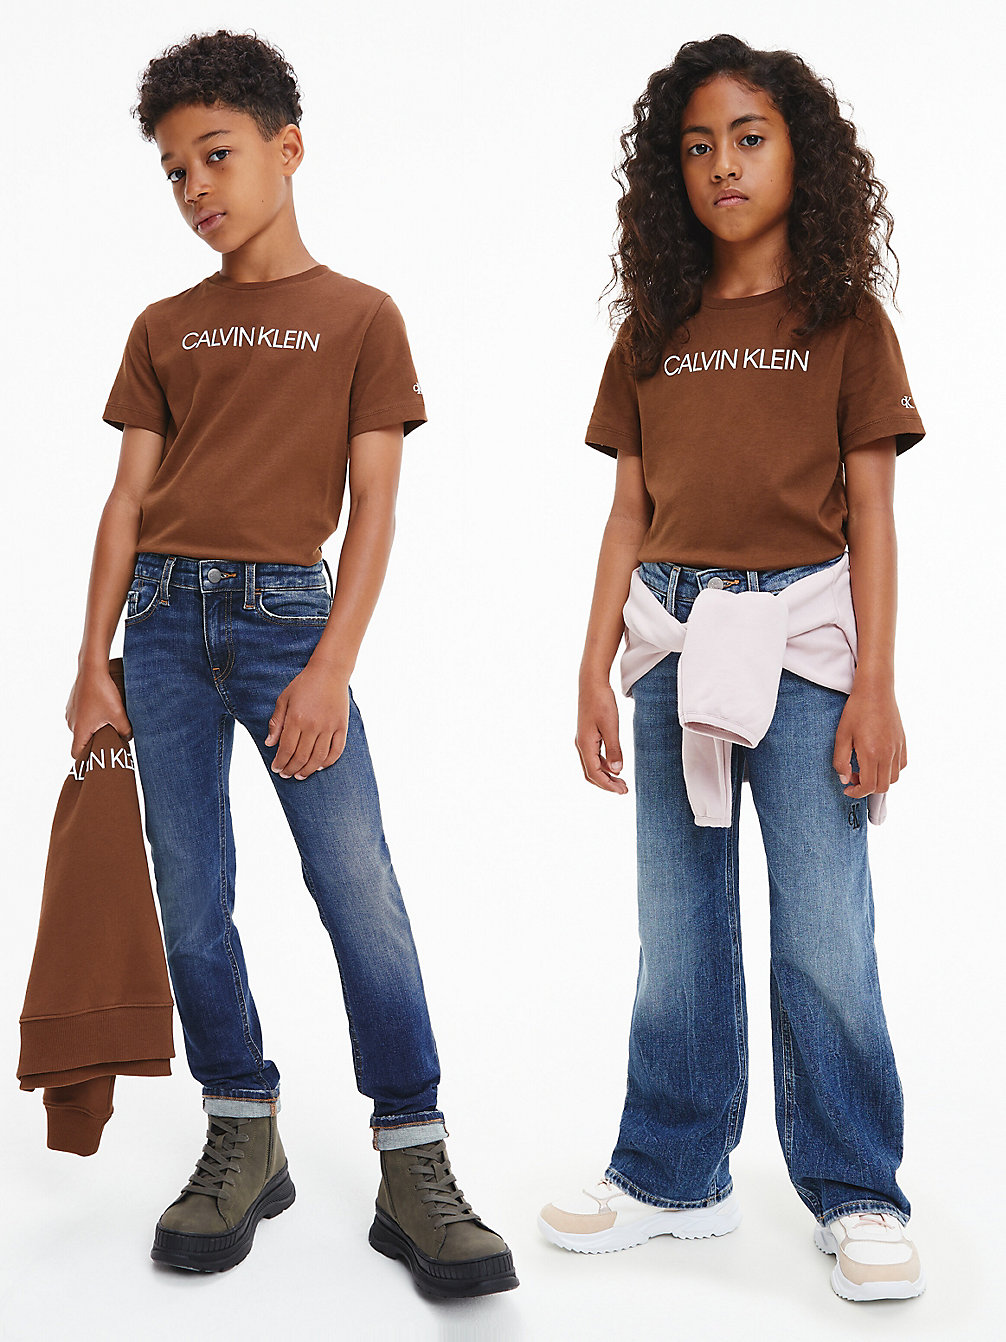 MILK CHOCOLATE Unisex Organic Cotton Logo T-Shirt undefined kids unisex Calvin Klein